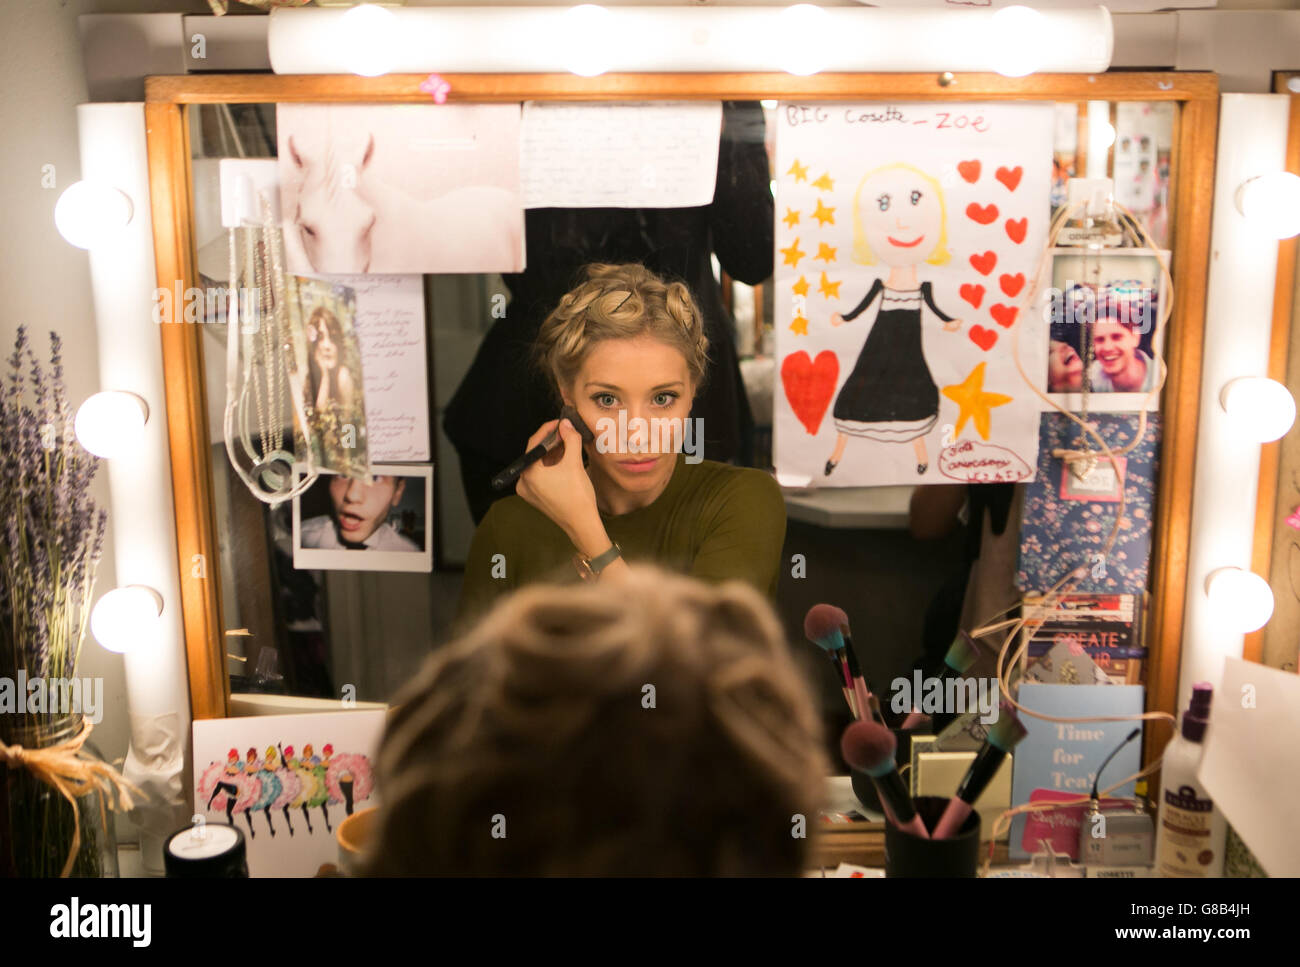 La actriz Zoe Doano se prepara entre bastidores antes de la gala de gala del 30th aniversario de Les Miserables en el Queen's Theatre, Londres, en ayuda de Save the Children. Foto de stock